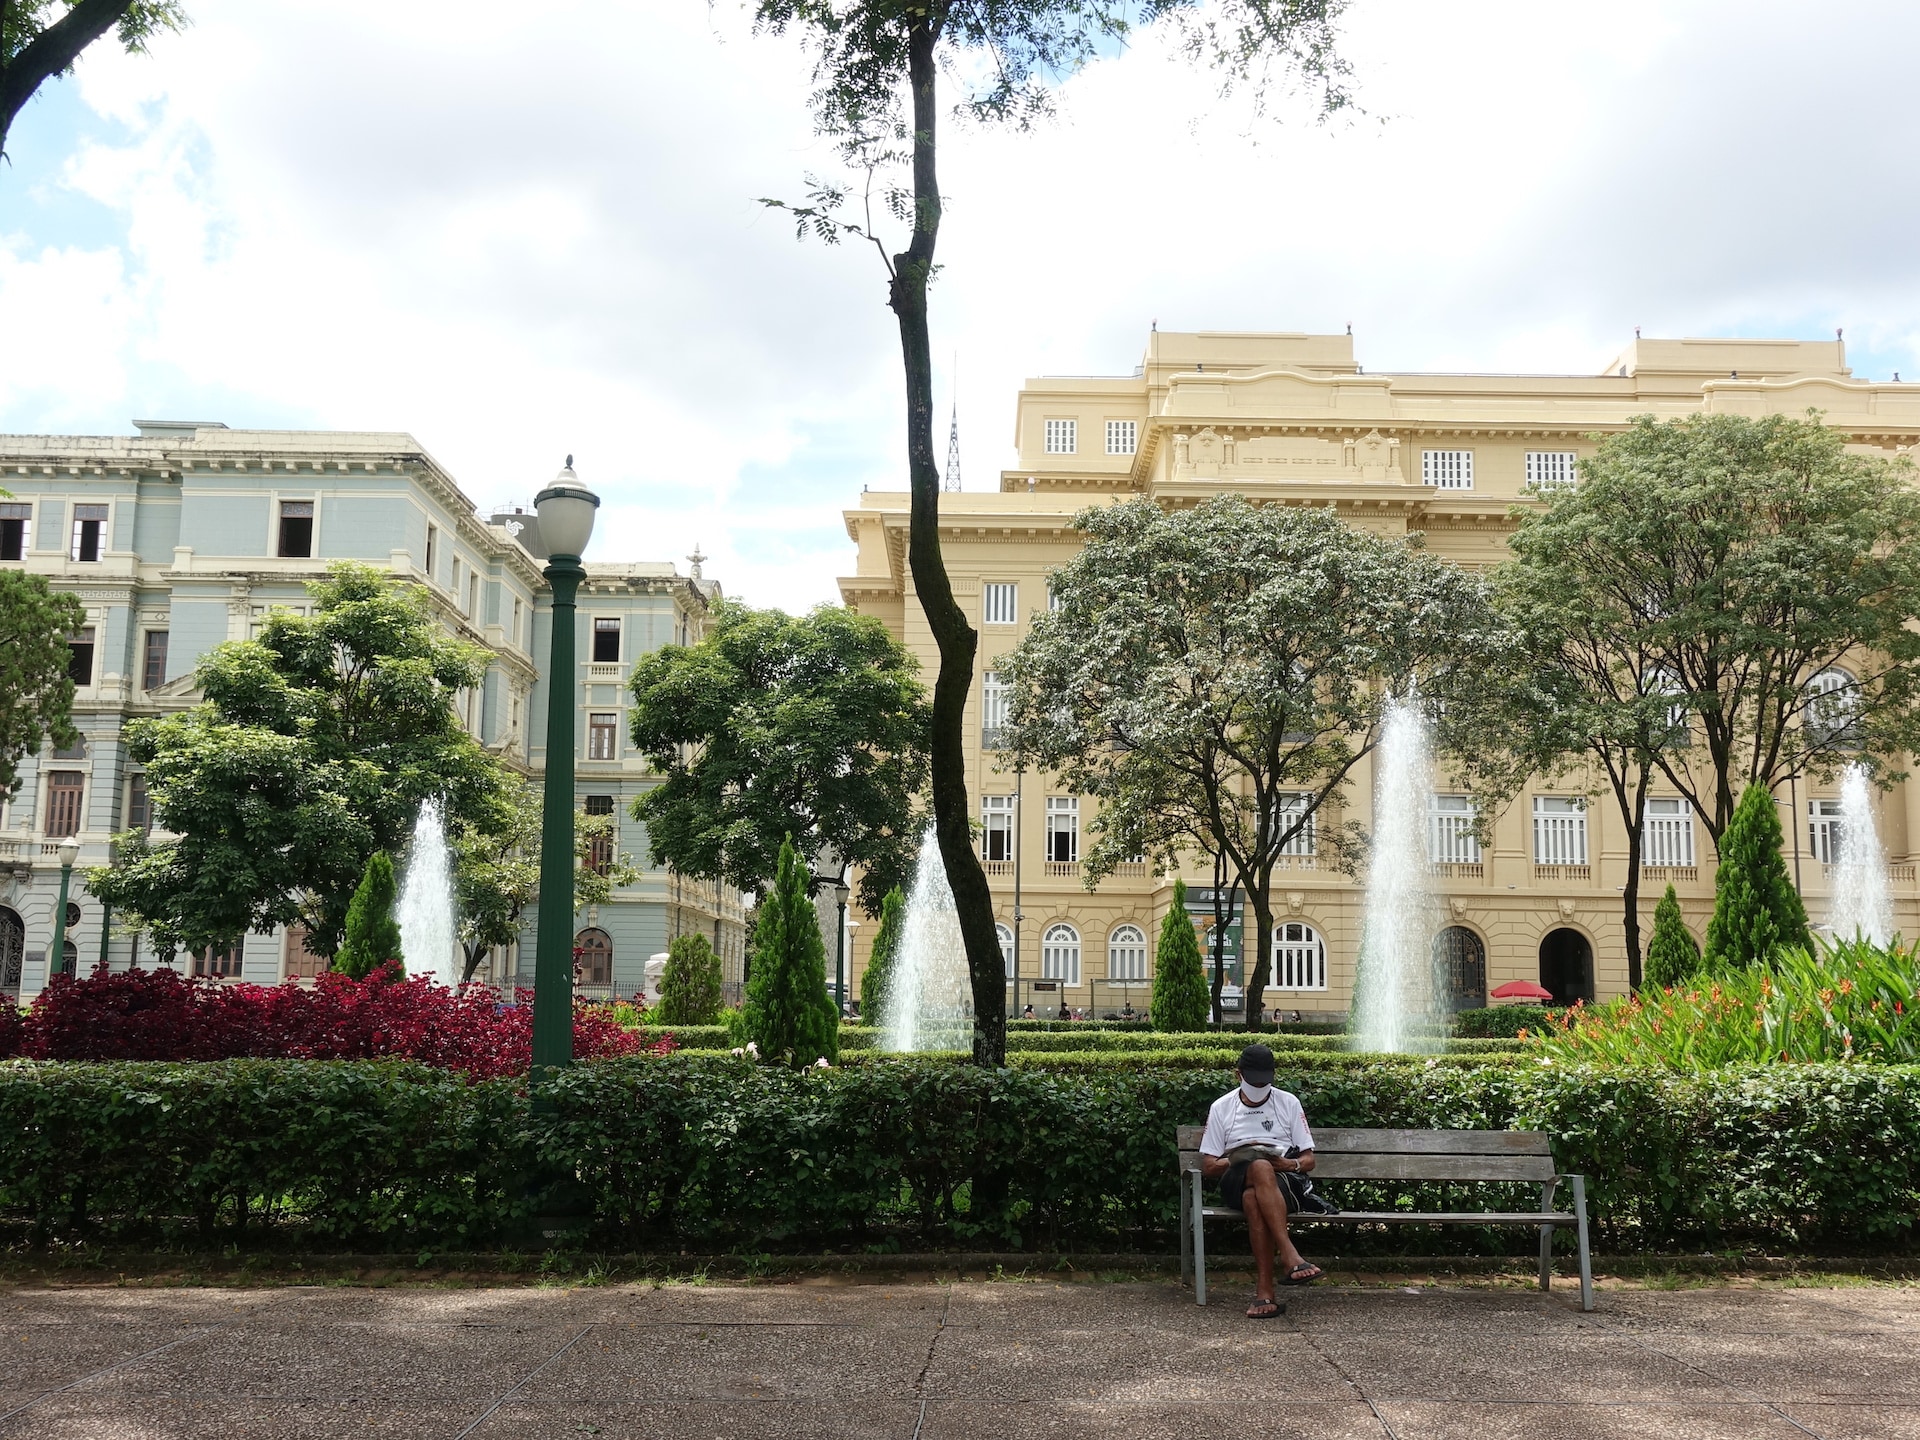 Em primeiro plano, homem com camiseta de time, boné e máscara lê algo sentado em um banco. Ao fundo, um jardim, chafarizes e dois prédios históricos, um amarelo e outro azul.